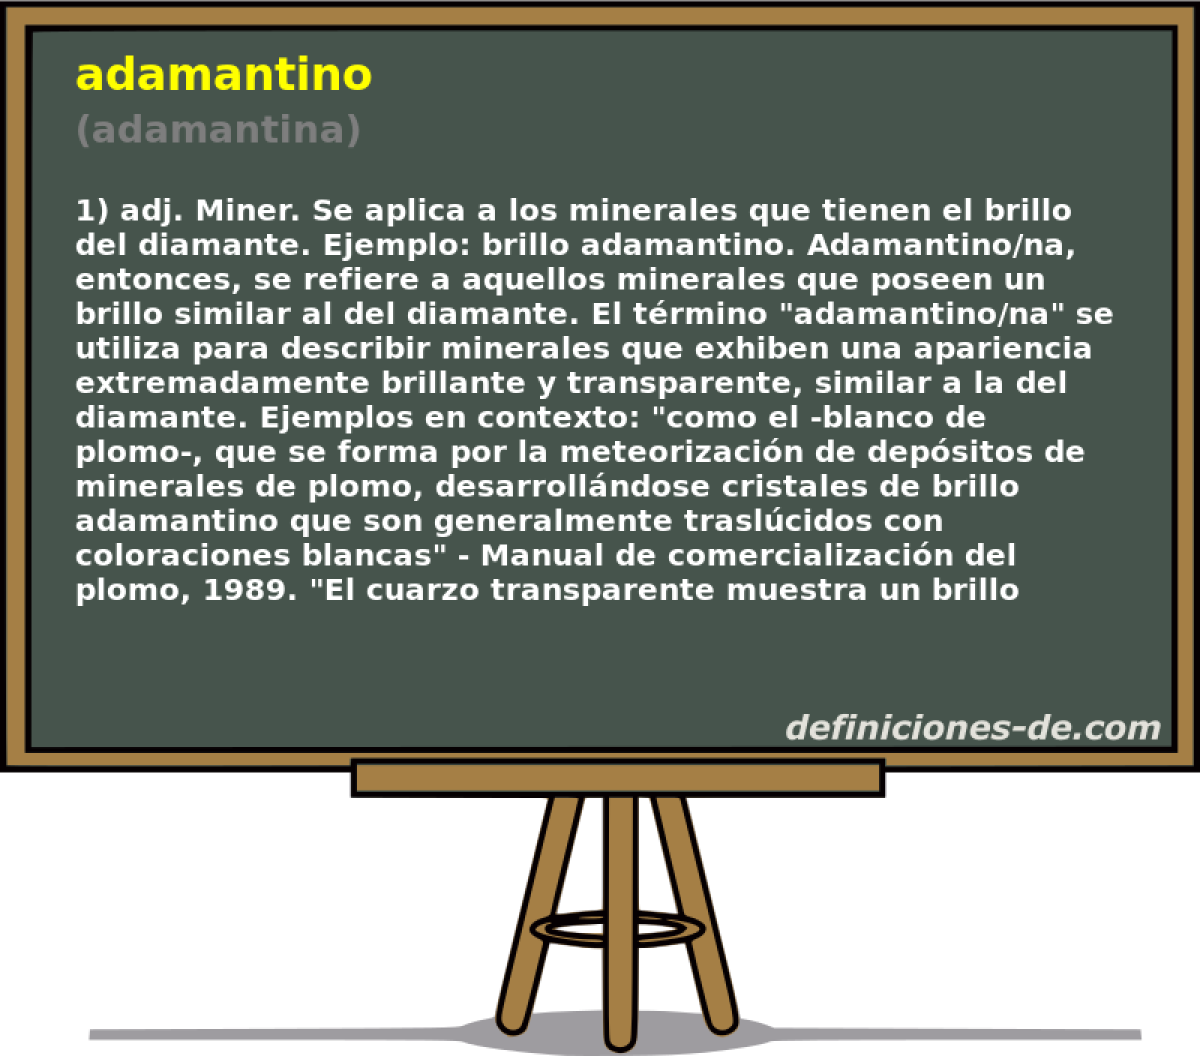 adamantino (adamantina)